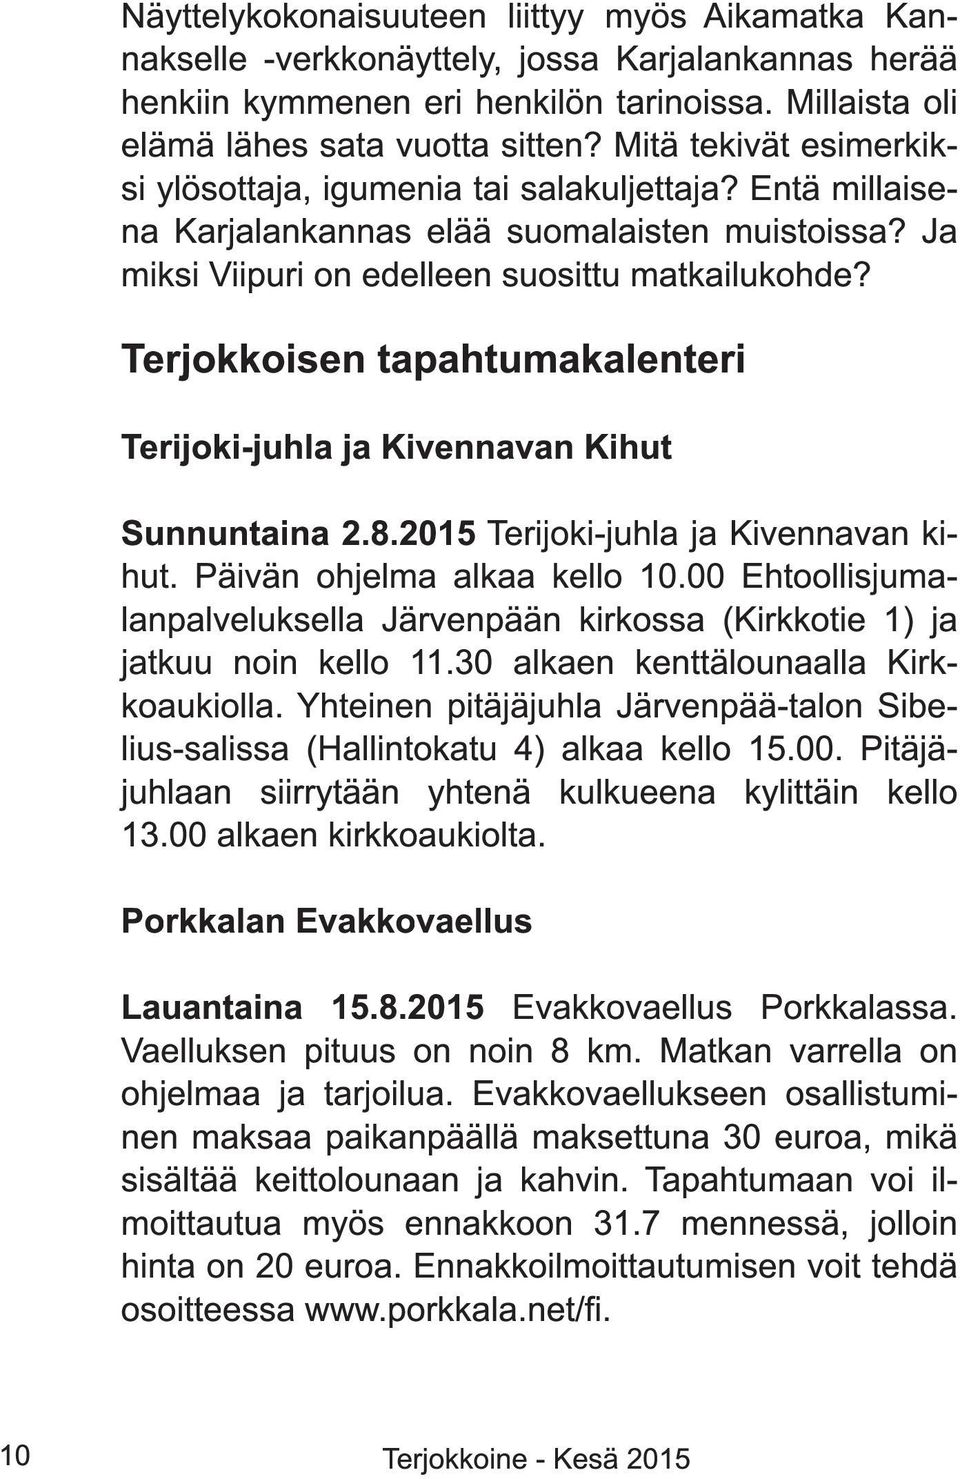 Terjokkoisen tapahtumakalenteri Terijoki-juhla ja Kivennavan Kihut Sunnuntaina 2.8.201 5 Terijoki-juhla ja Kivennavan kihut. Päivän ohjelma alkaa kello 1 0.